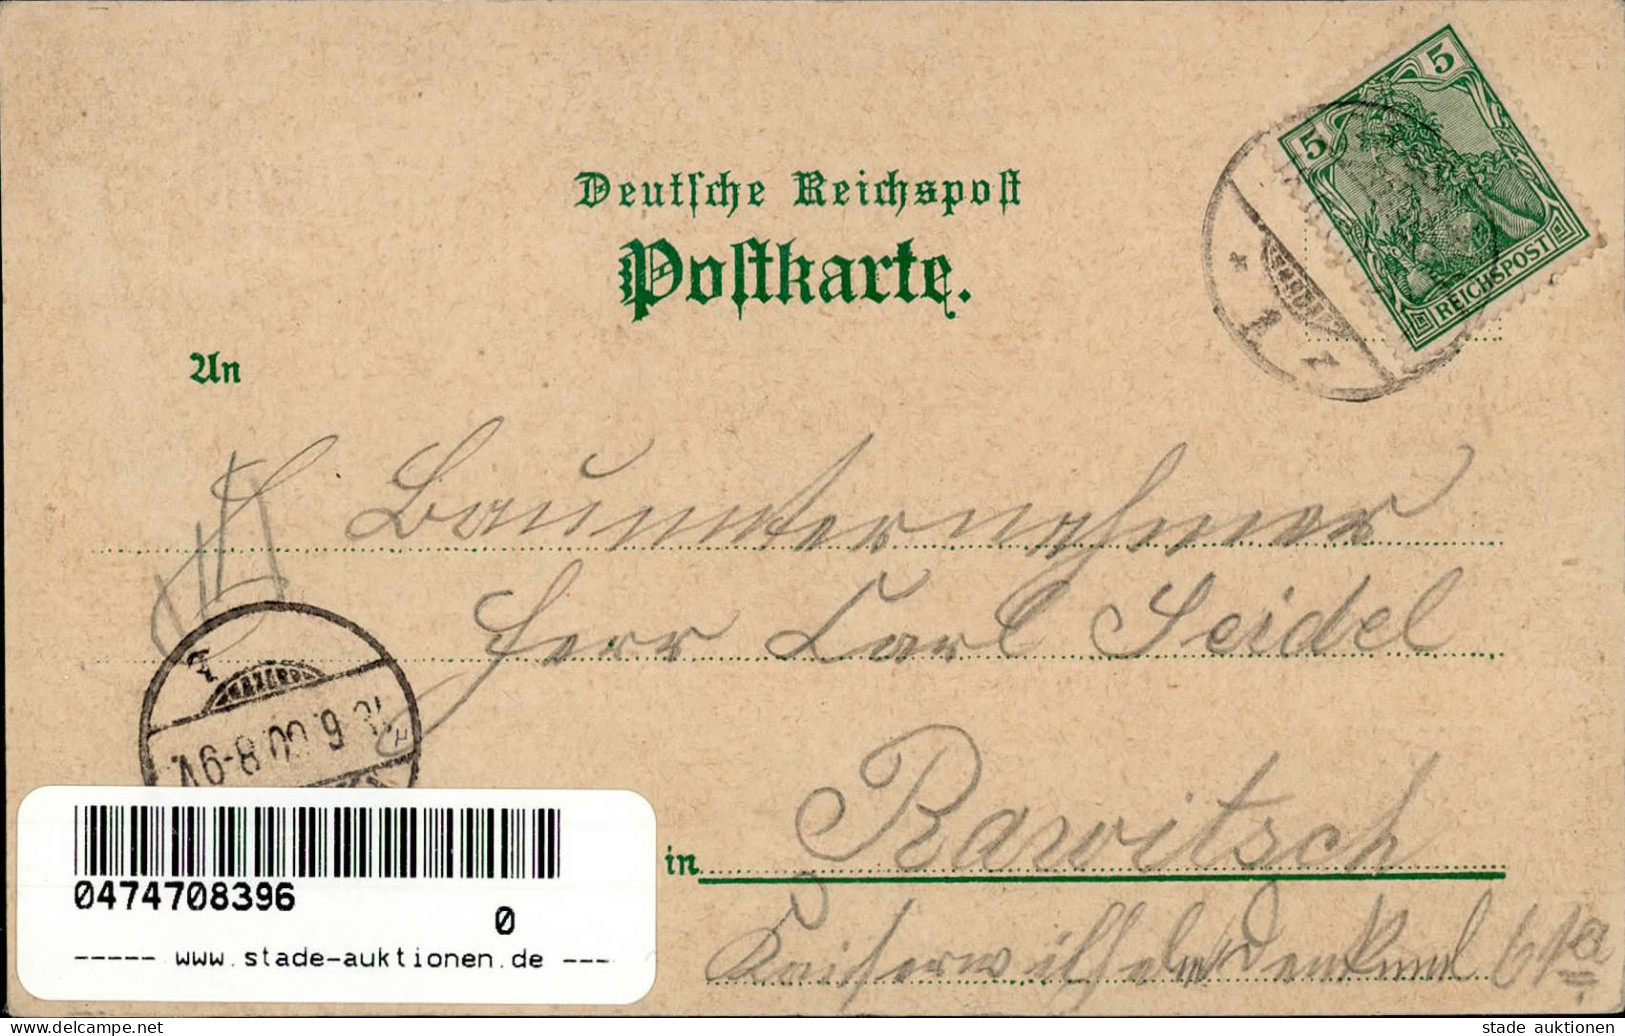 Breslau Schiesswerder 1900 I-II (Stauchung) - Poland